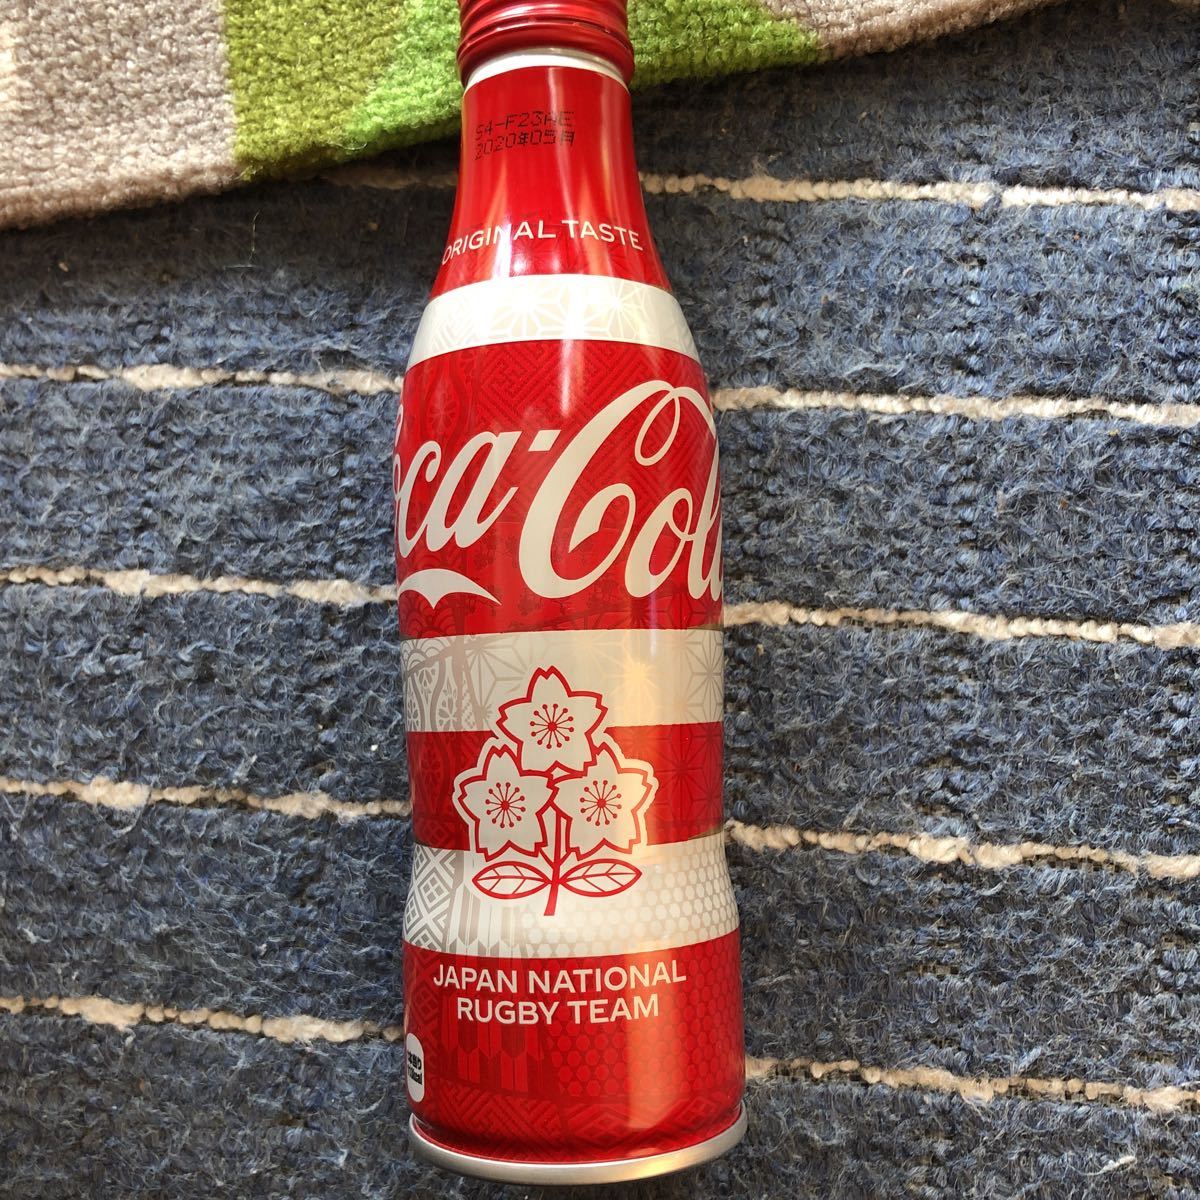 ラグビー日本代表 ワールドカップ コカコーラ瓶 から瓶 アルミ スリムボトル 空き缶 Japan Rugby Coca Cola コカ コーラ 売買されたオークション情報 Yahooの商品情報をアーカイブ公開 オークファン Aucfan Com